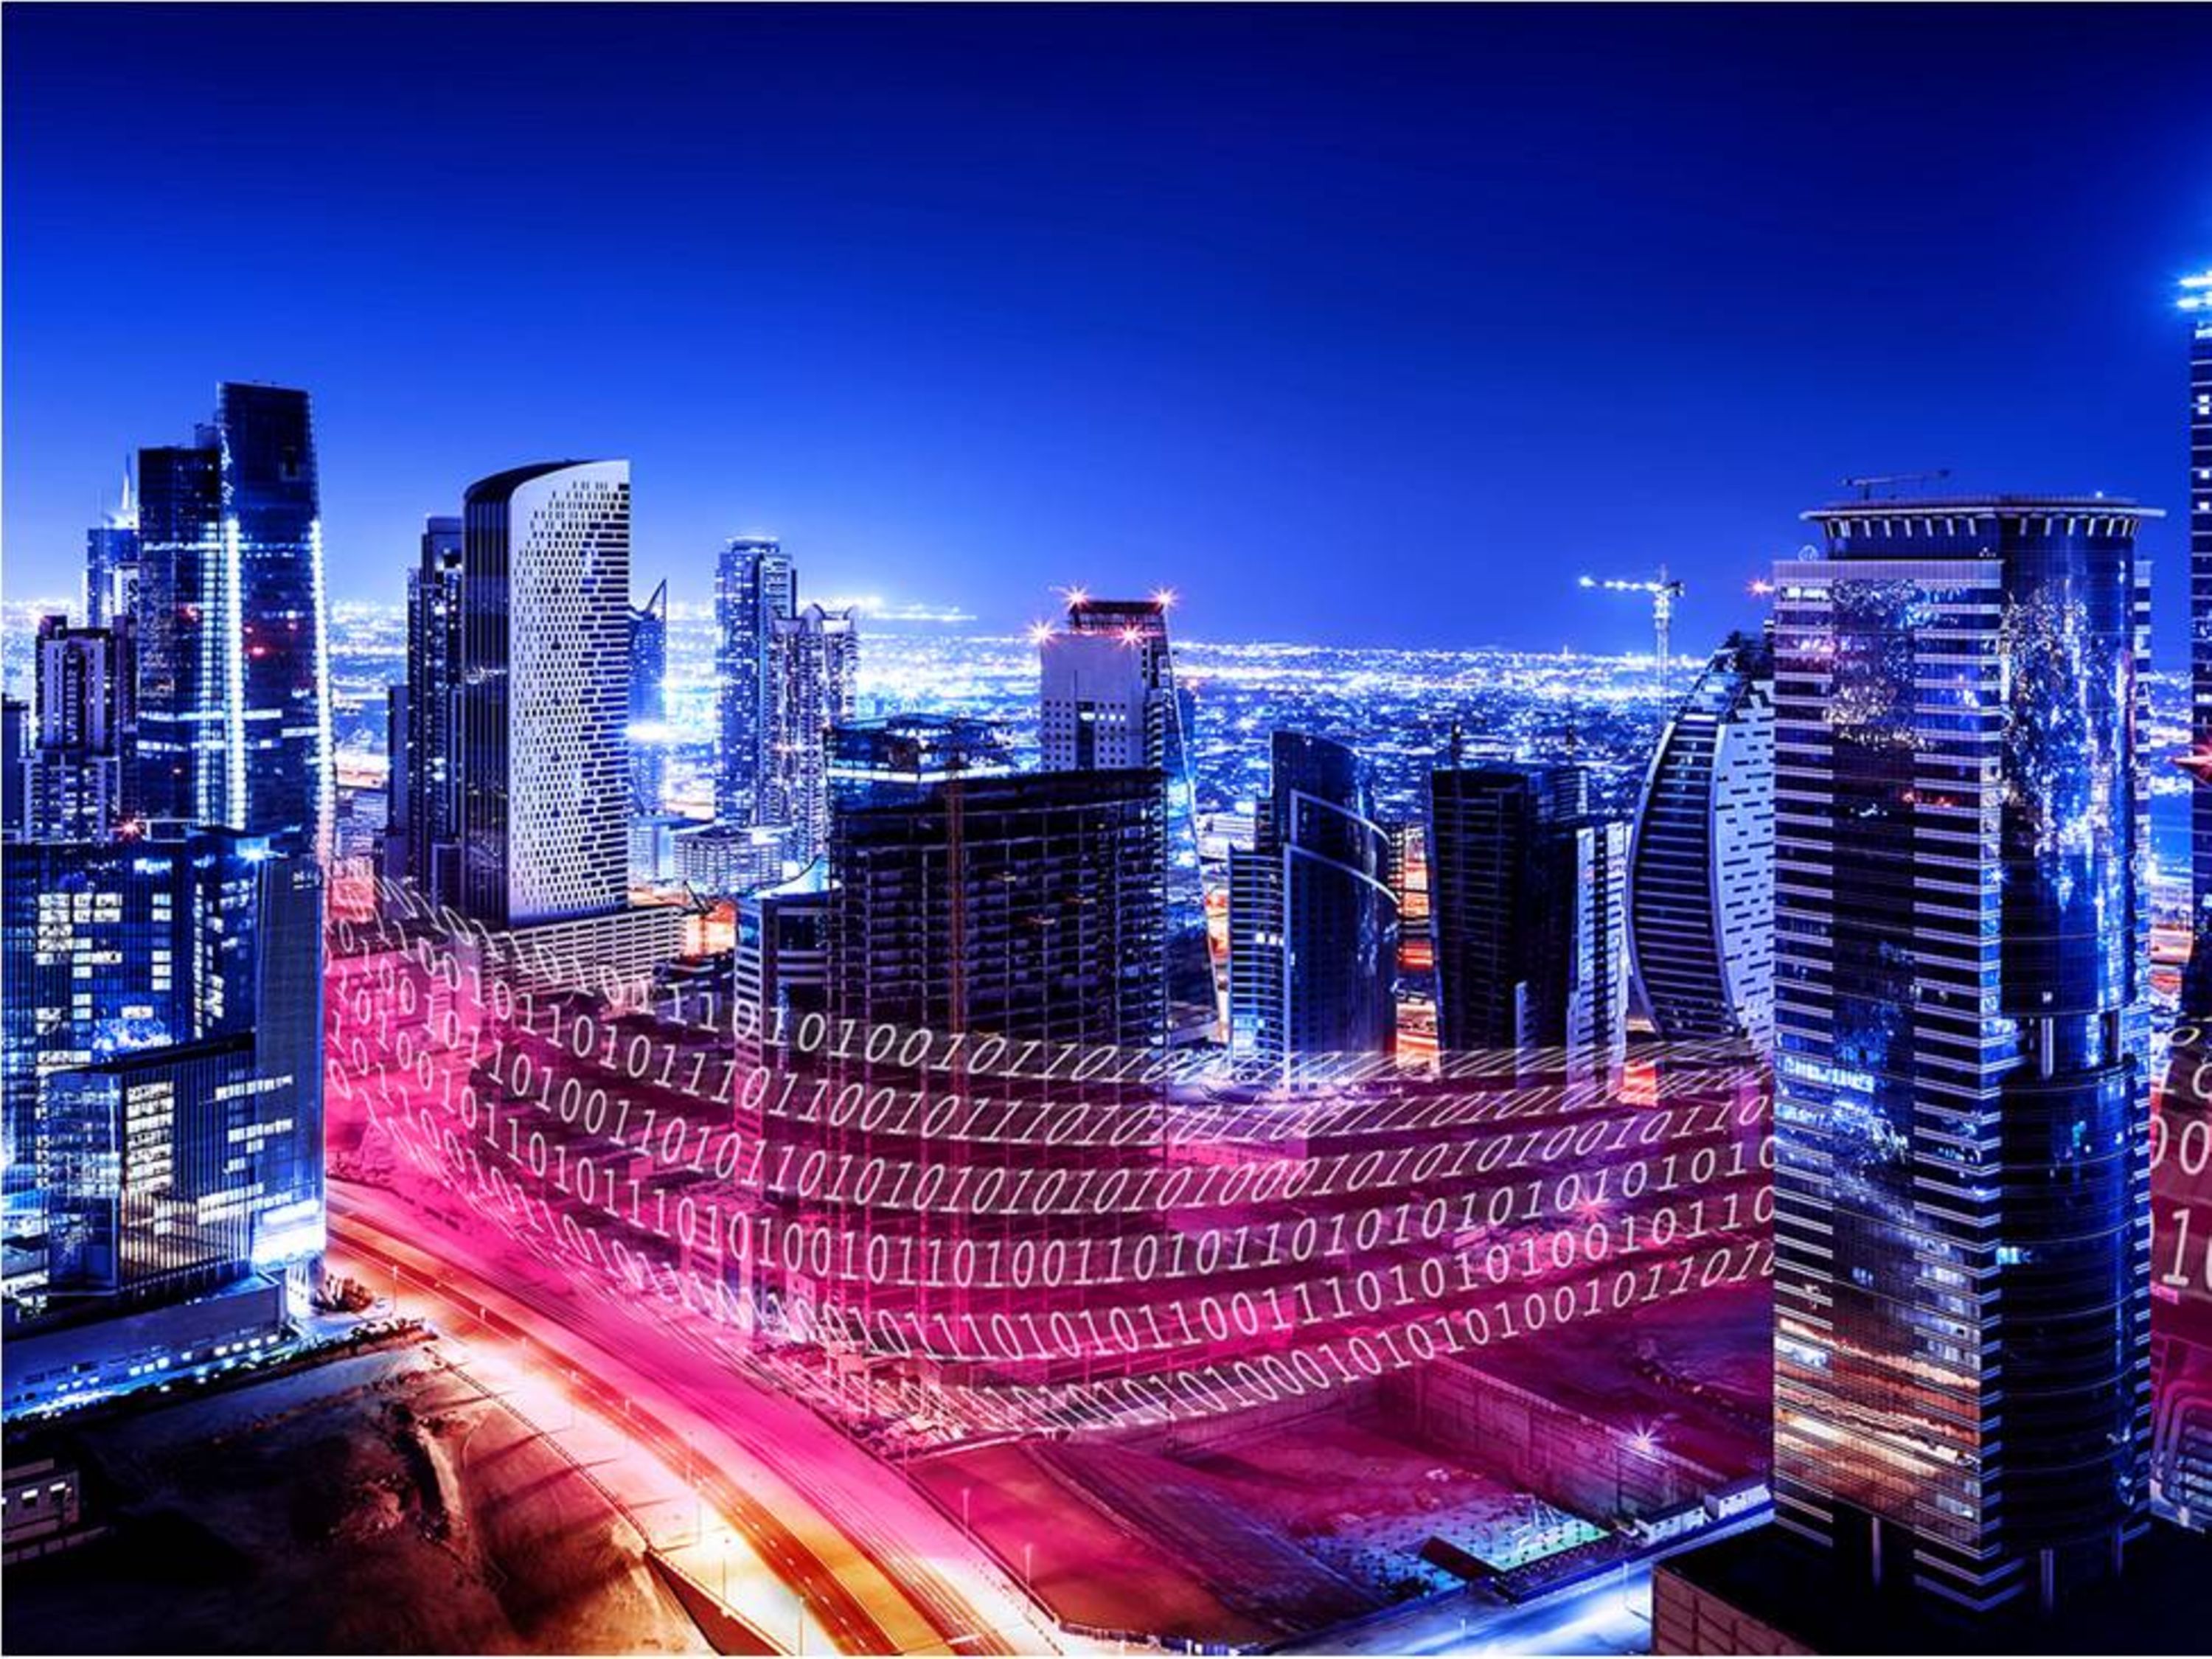 Deutsche Telekom: Smart City